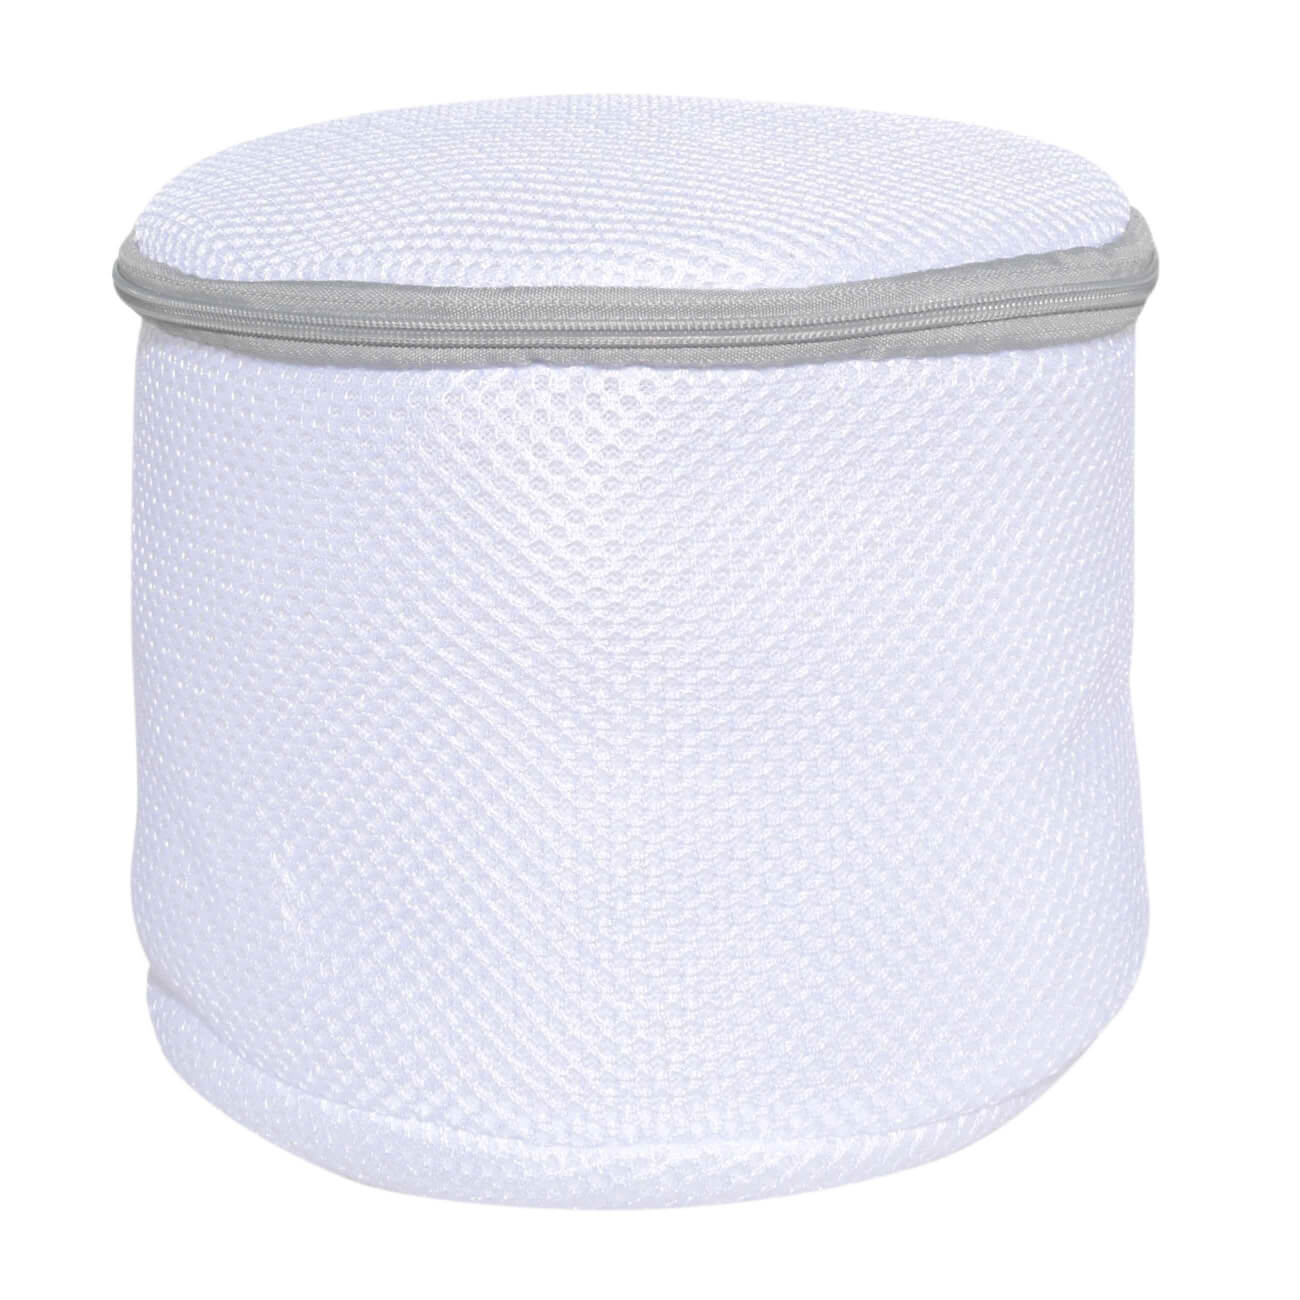 Мешок для стирки бюстгалтеров, 17х15 см, с защитой, полиэстер, бело-серый, Safety мешок для стирки бюстгальтеров essentielb цвет белый